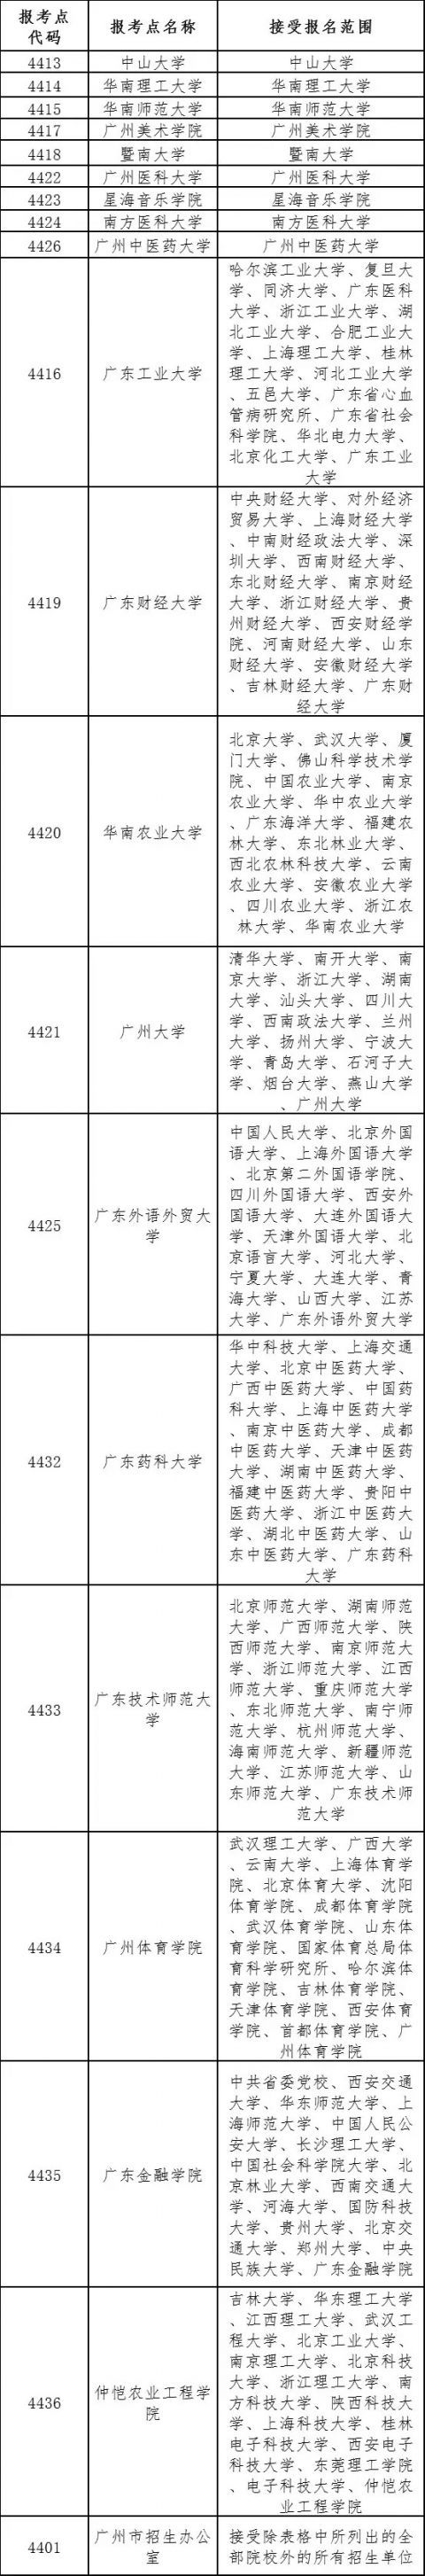 广东2020研究生报考人数